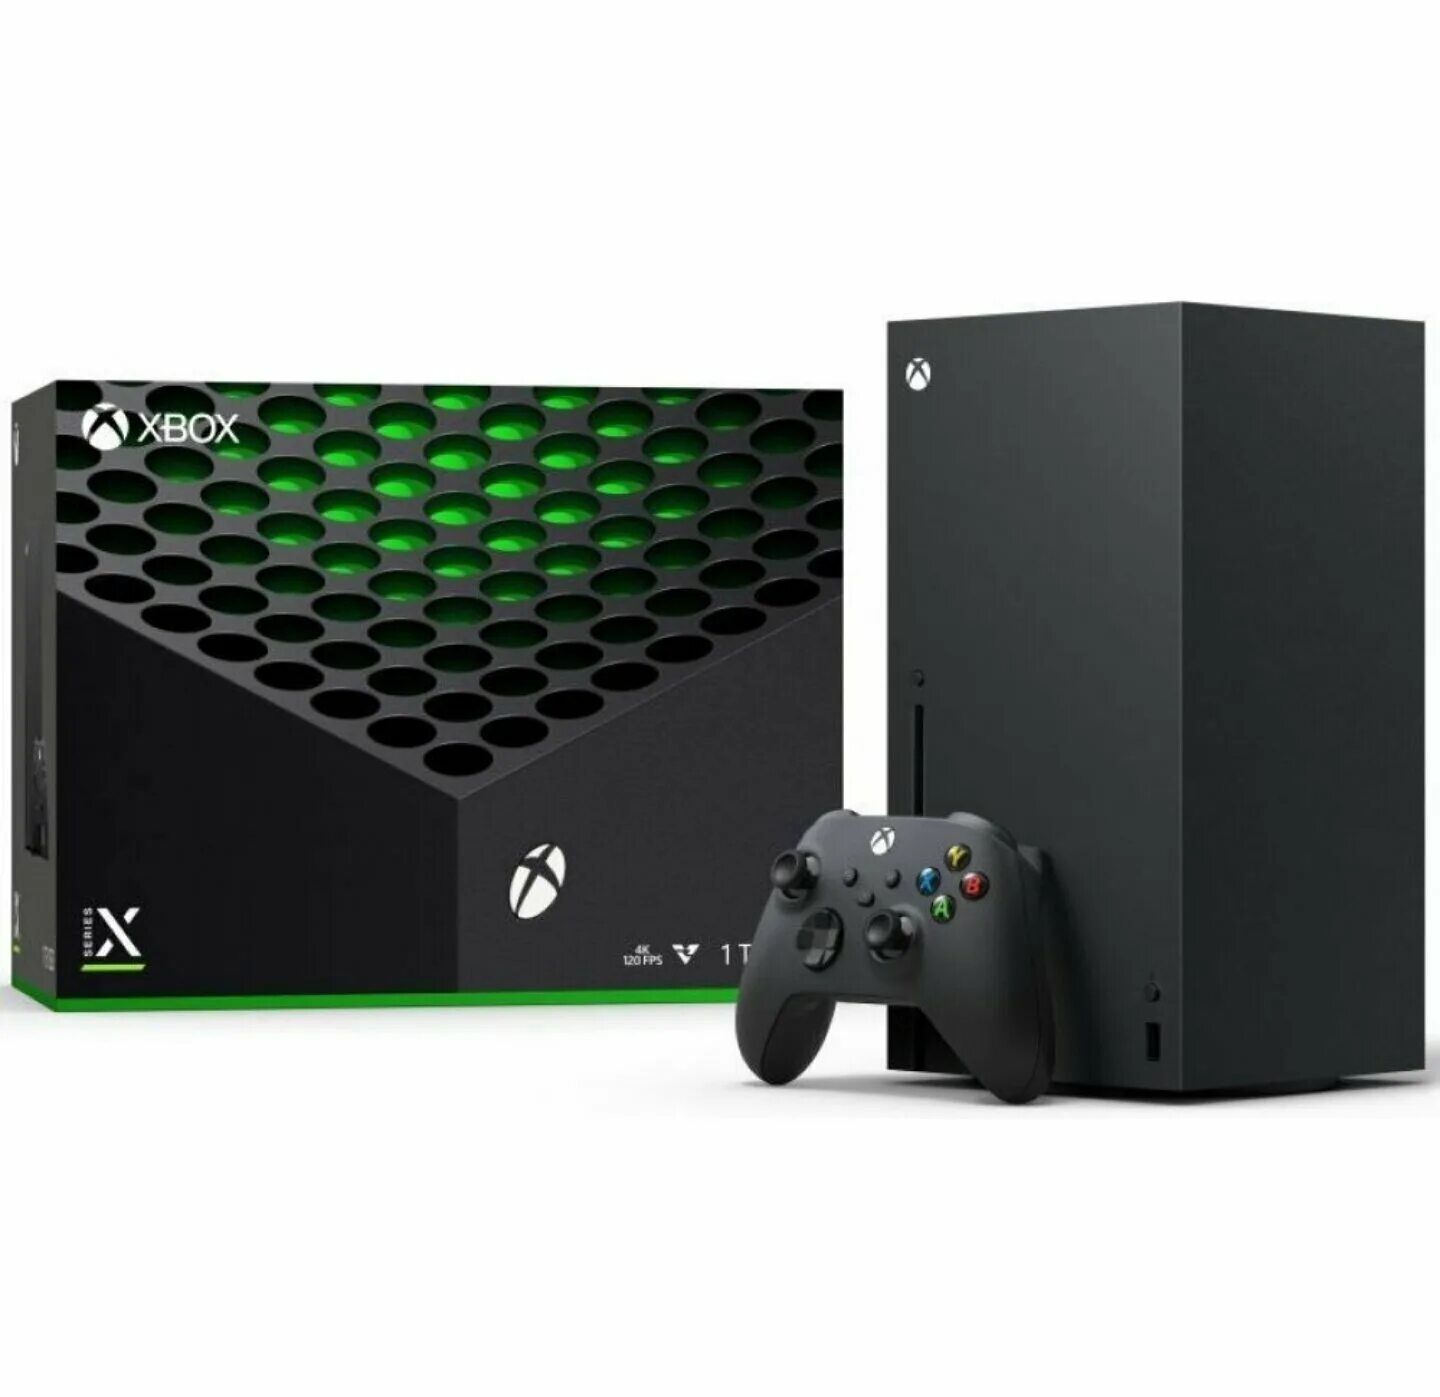 Купить xbox series s carbon. Xbox one x 1tb. Xbox Series s 1tb. Xbox Series x 1tb. Игровая приставка Microsoft Xbox one s 1tb.